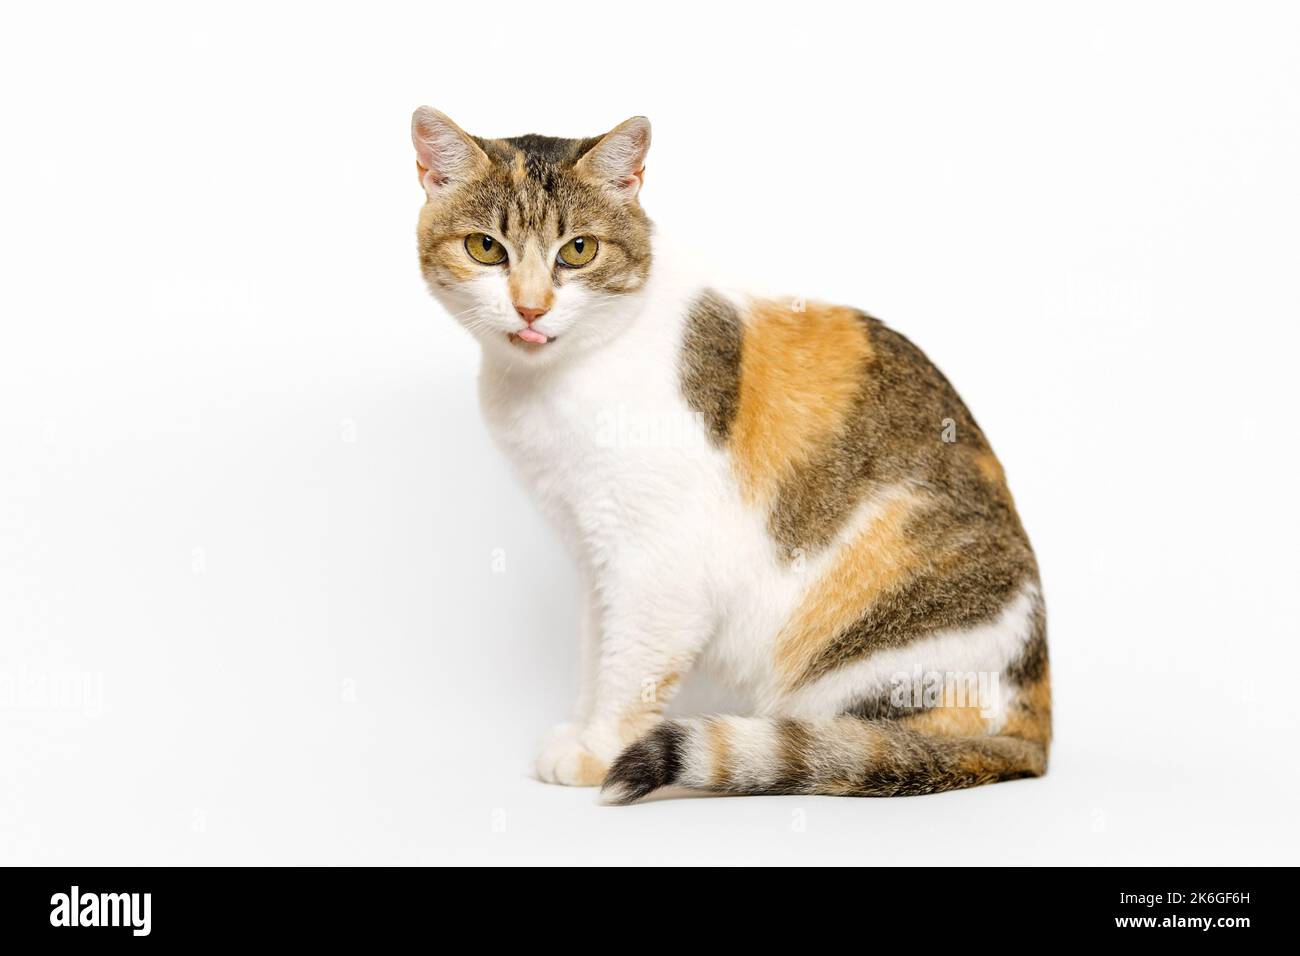 Trois chats Calico de couleur est assis dans le profil, regardant la caméra, léchant ses lèvres sur fond gris clair. Banque D'Images